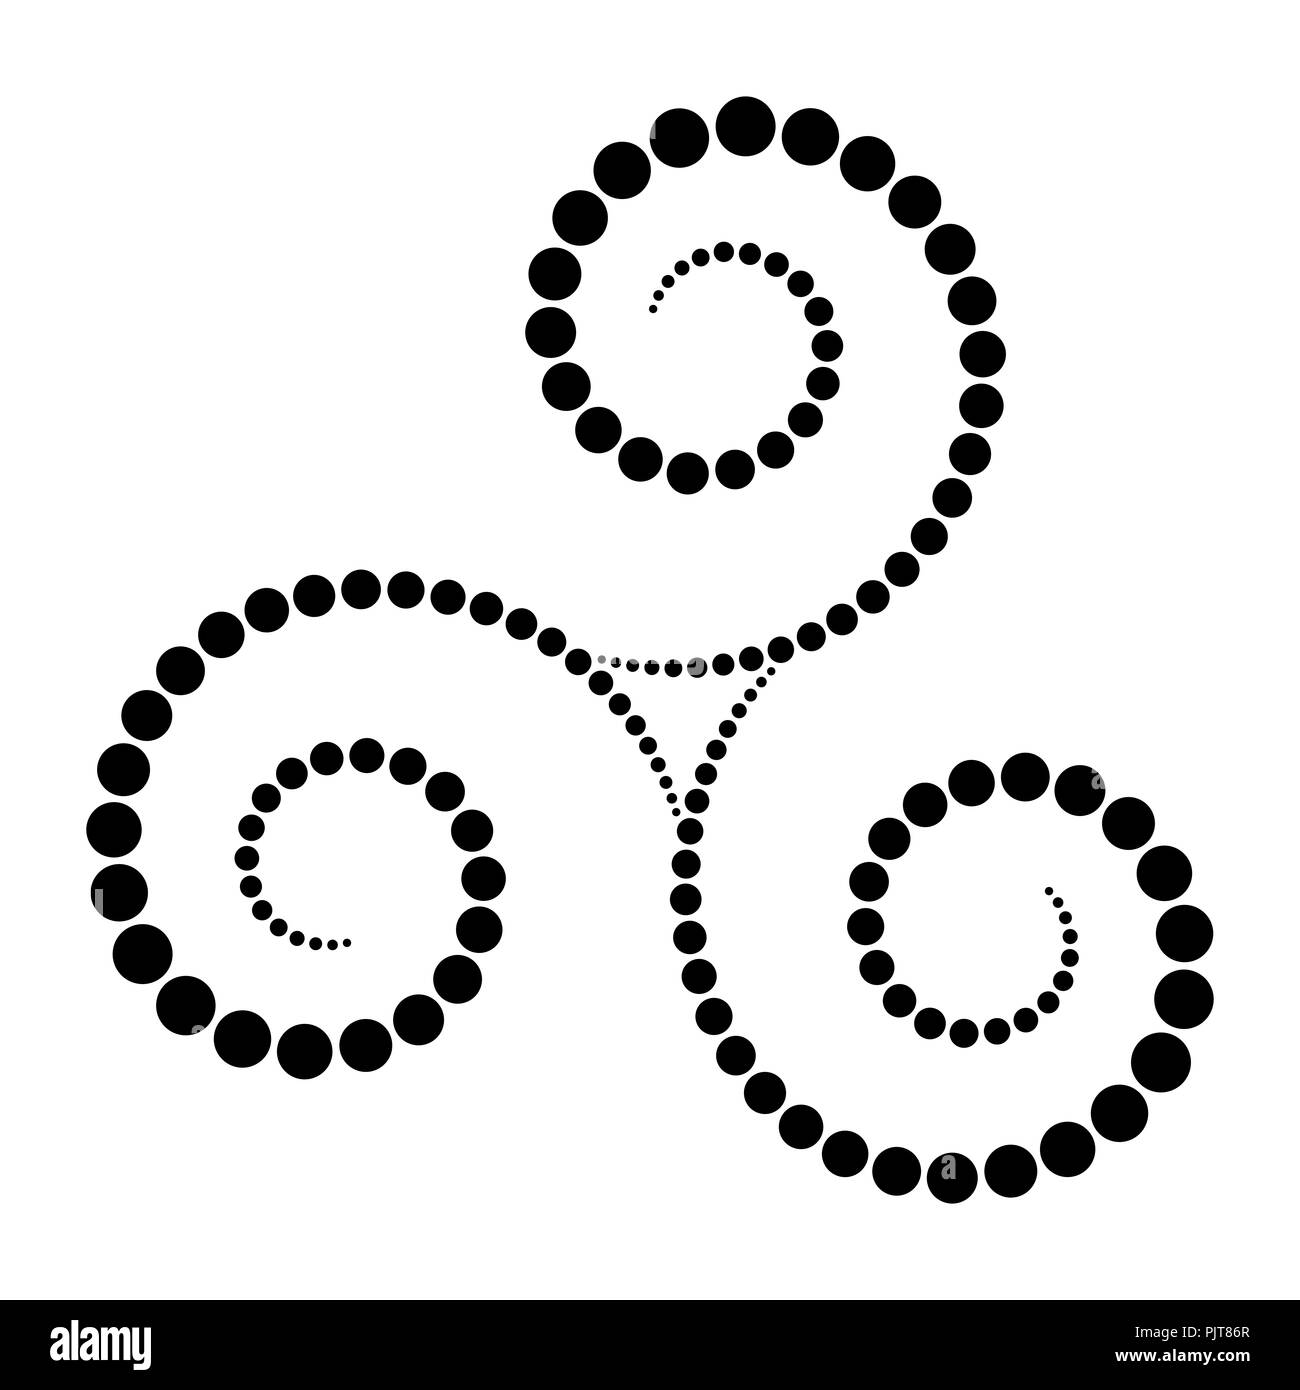 Le Triskèle Celtique en pointillé noir spirale. Points de plus en plus du centre des spirales formant une spirale triple. Tordus et relié spirales. Banque D'Images